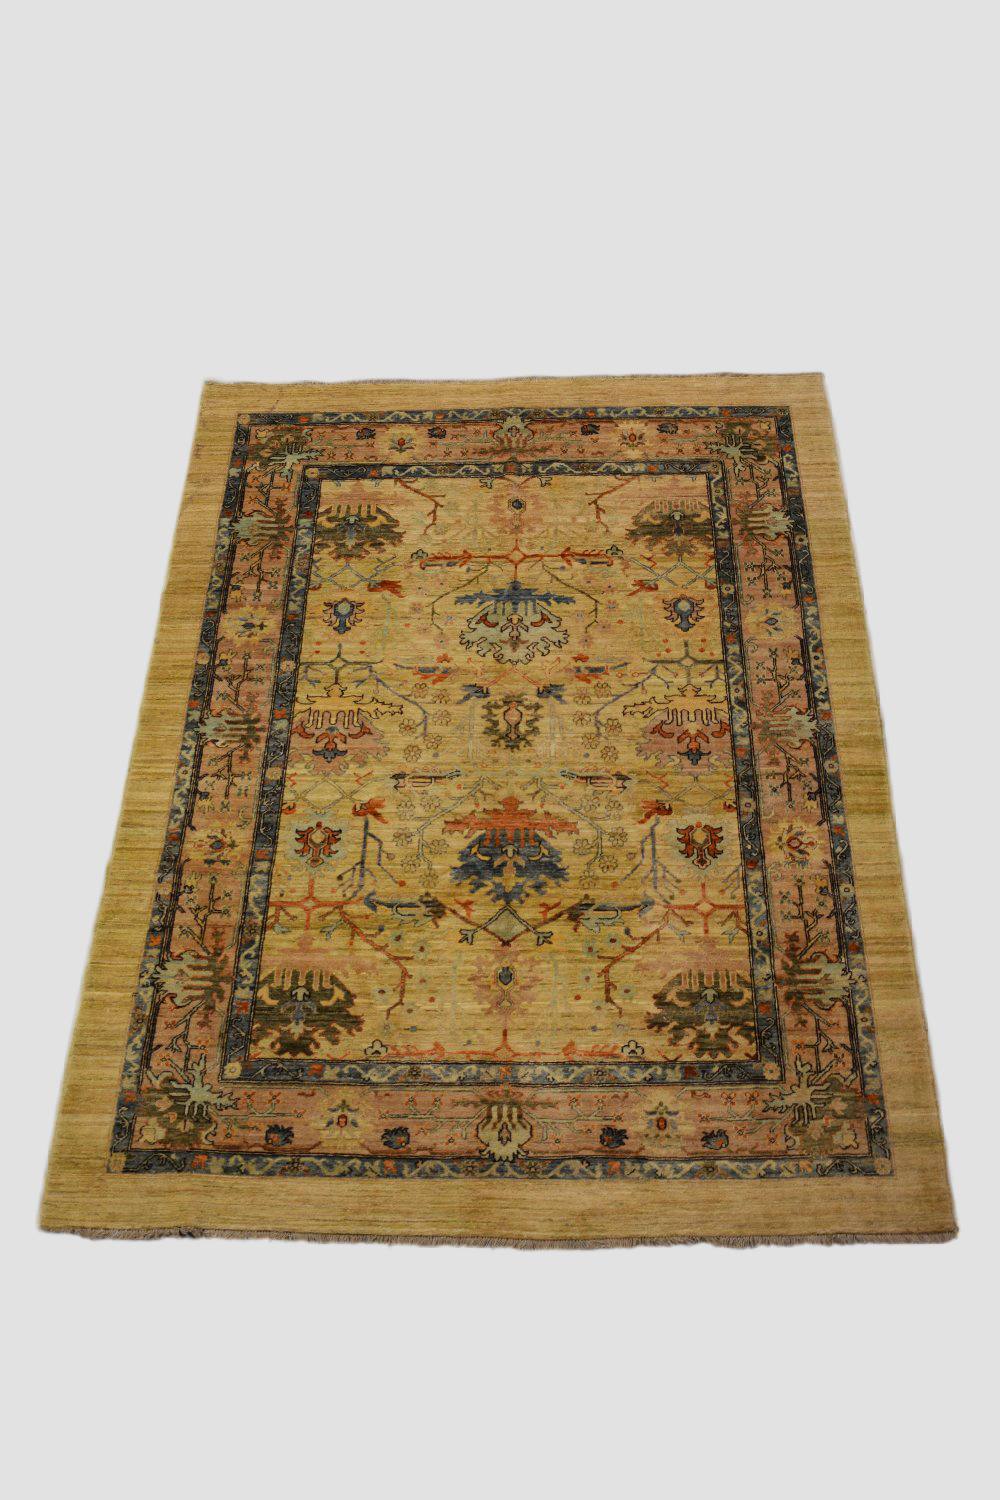 Ushak design carpet of modern production, 8ft. 7in. x 6ft. 4in. 2.62m. x 1.93m.